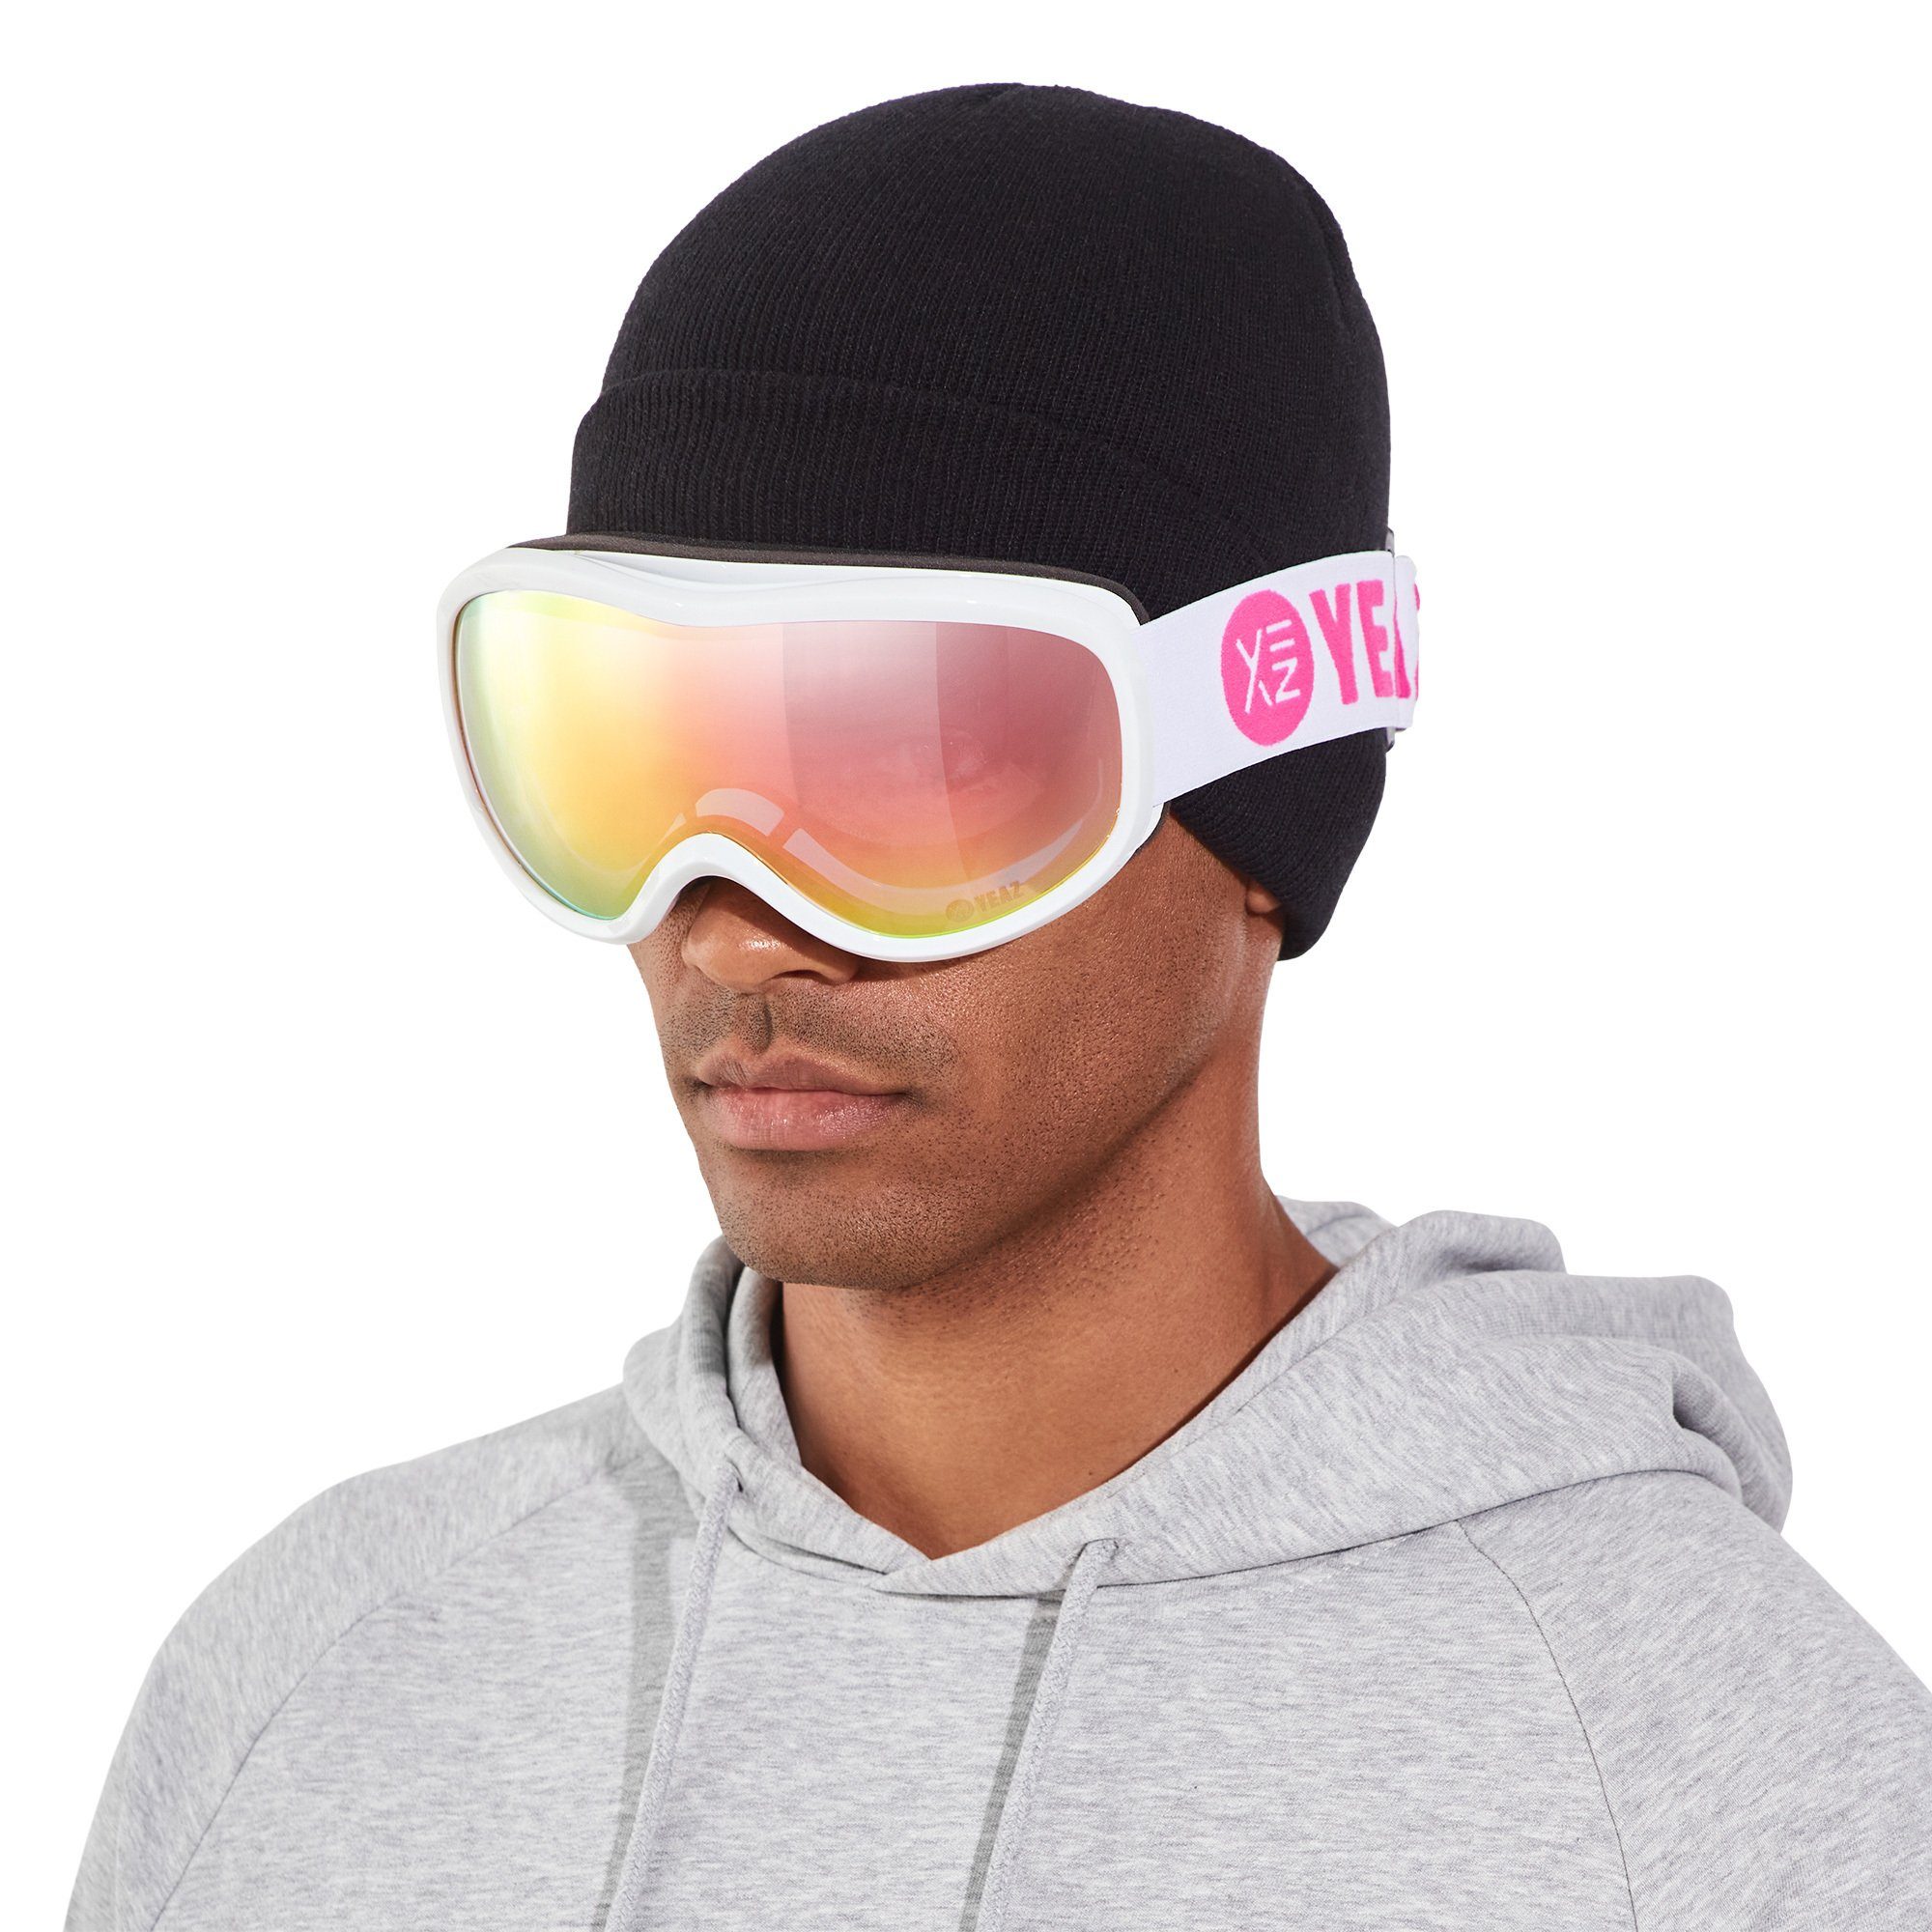 YEAZ Skibrille Jugendliche STEEZE snowboard-brille und Snowboardbrille Premium-Ski- pink/weiss, und und Erwachsene für ski